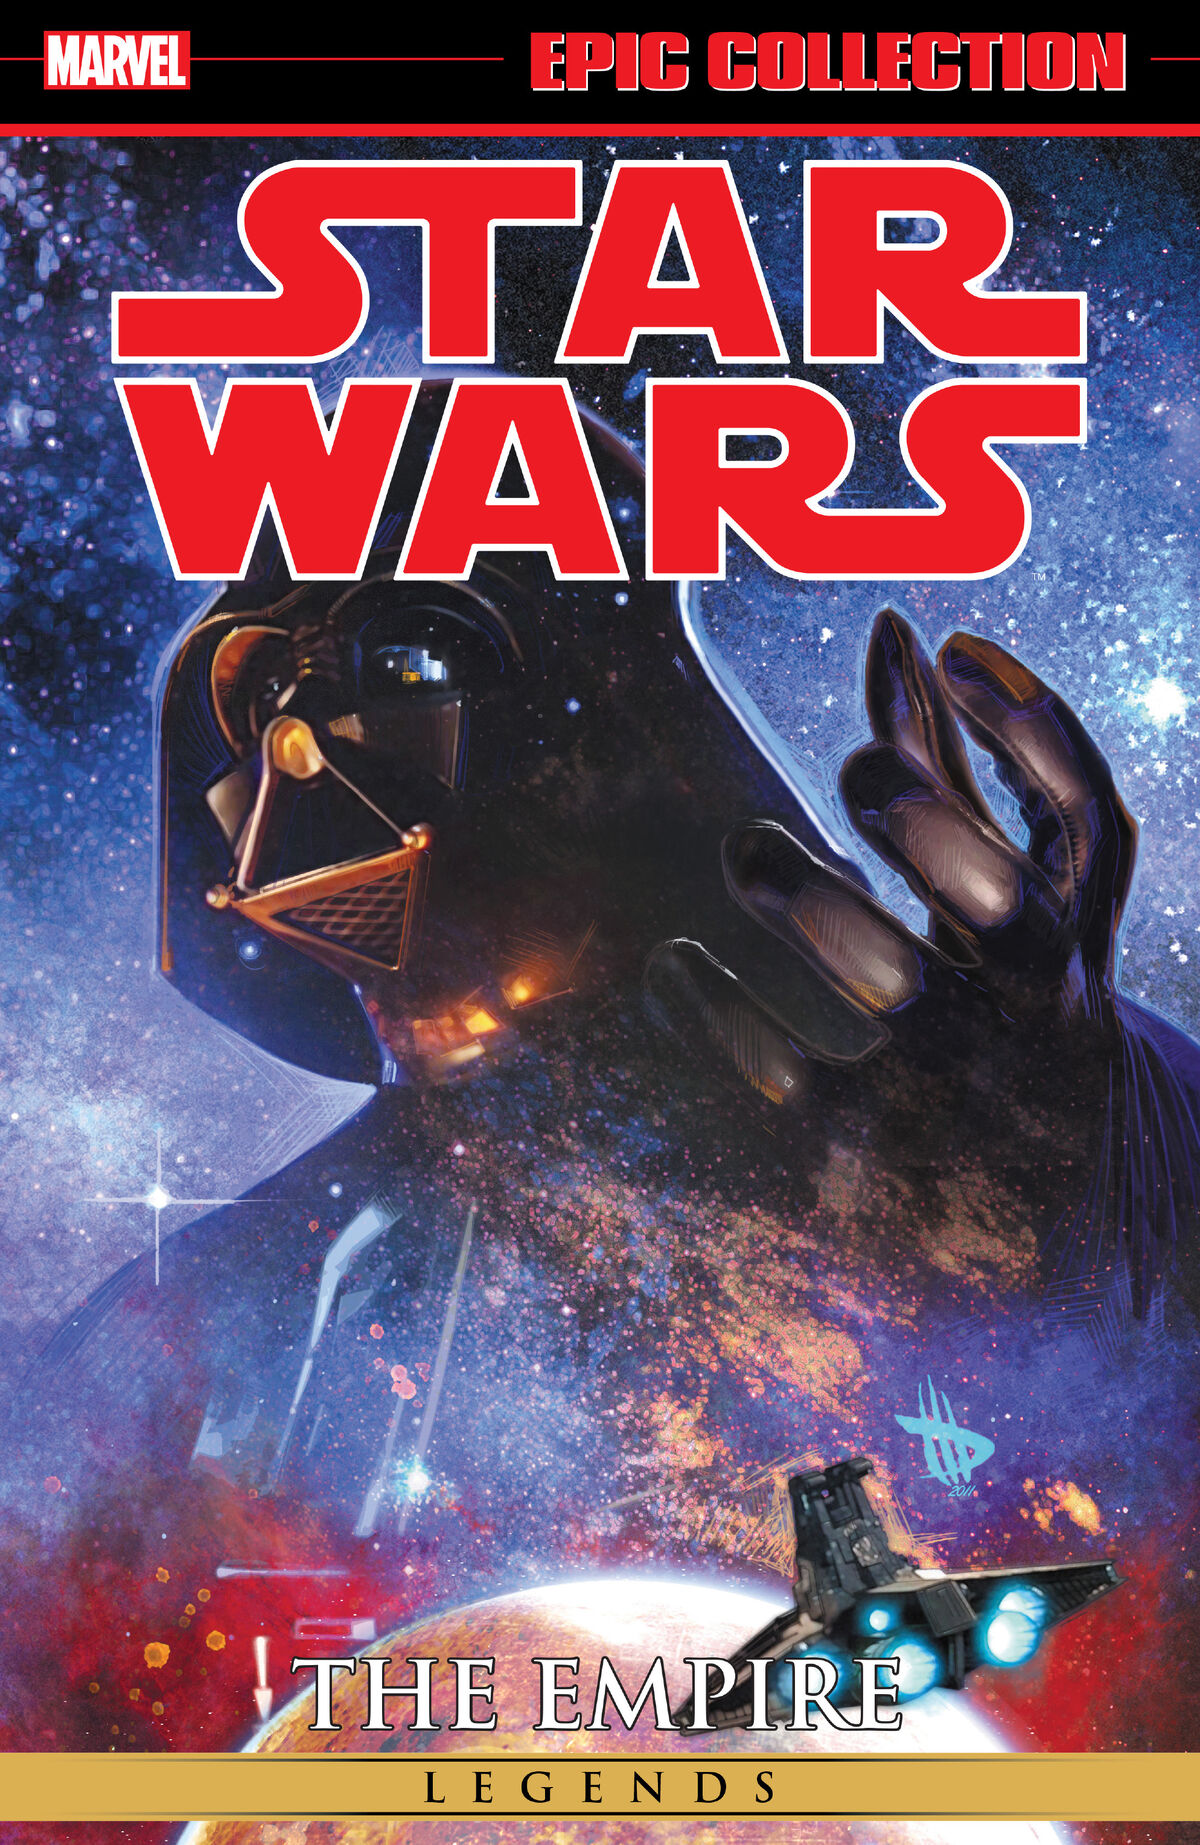 Star Wars легенды. Звёздные войны легенды книги. Звёздные войны легкнды книга. Album Cover Star Wars.